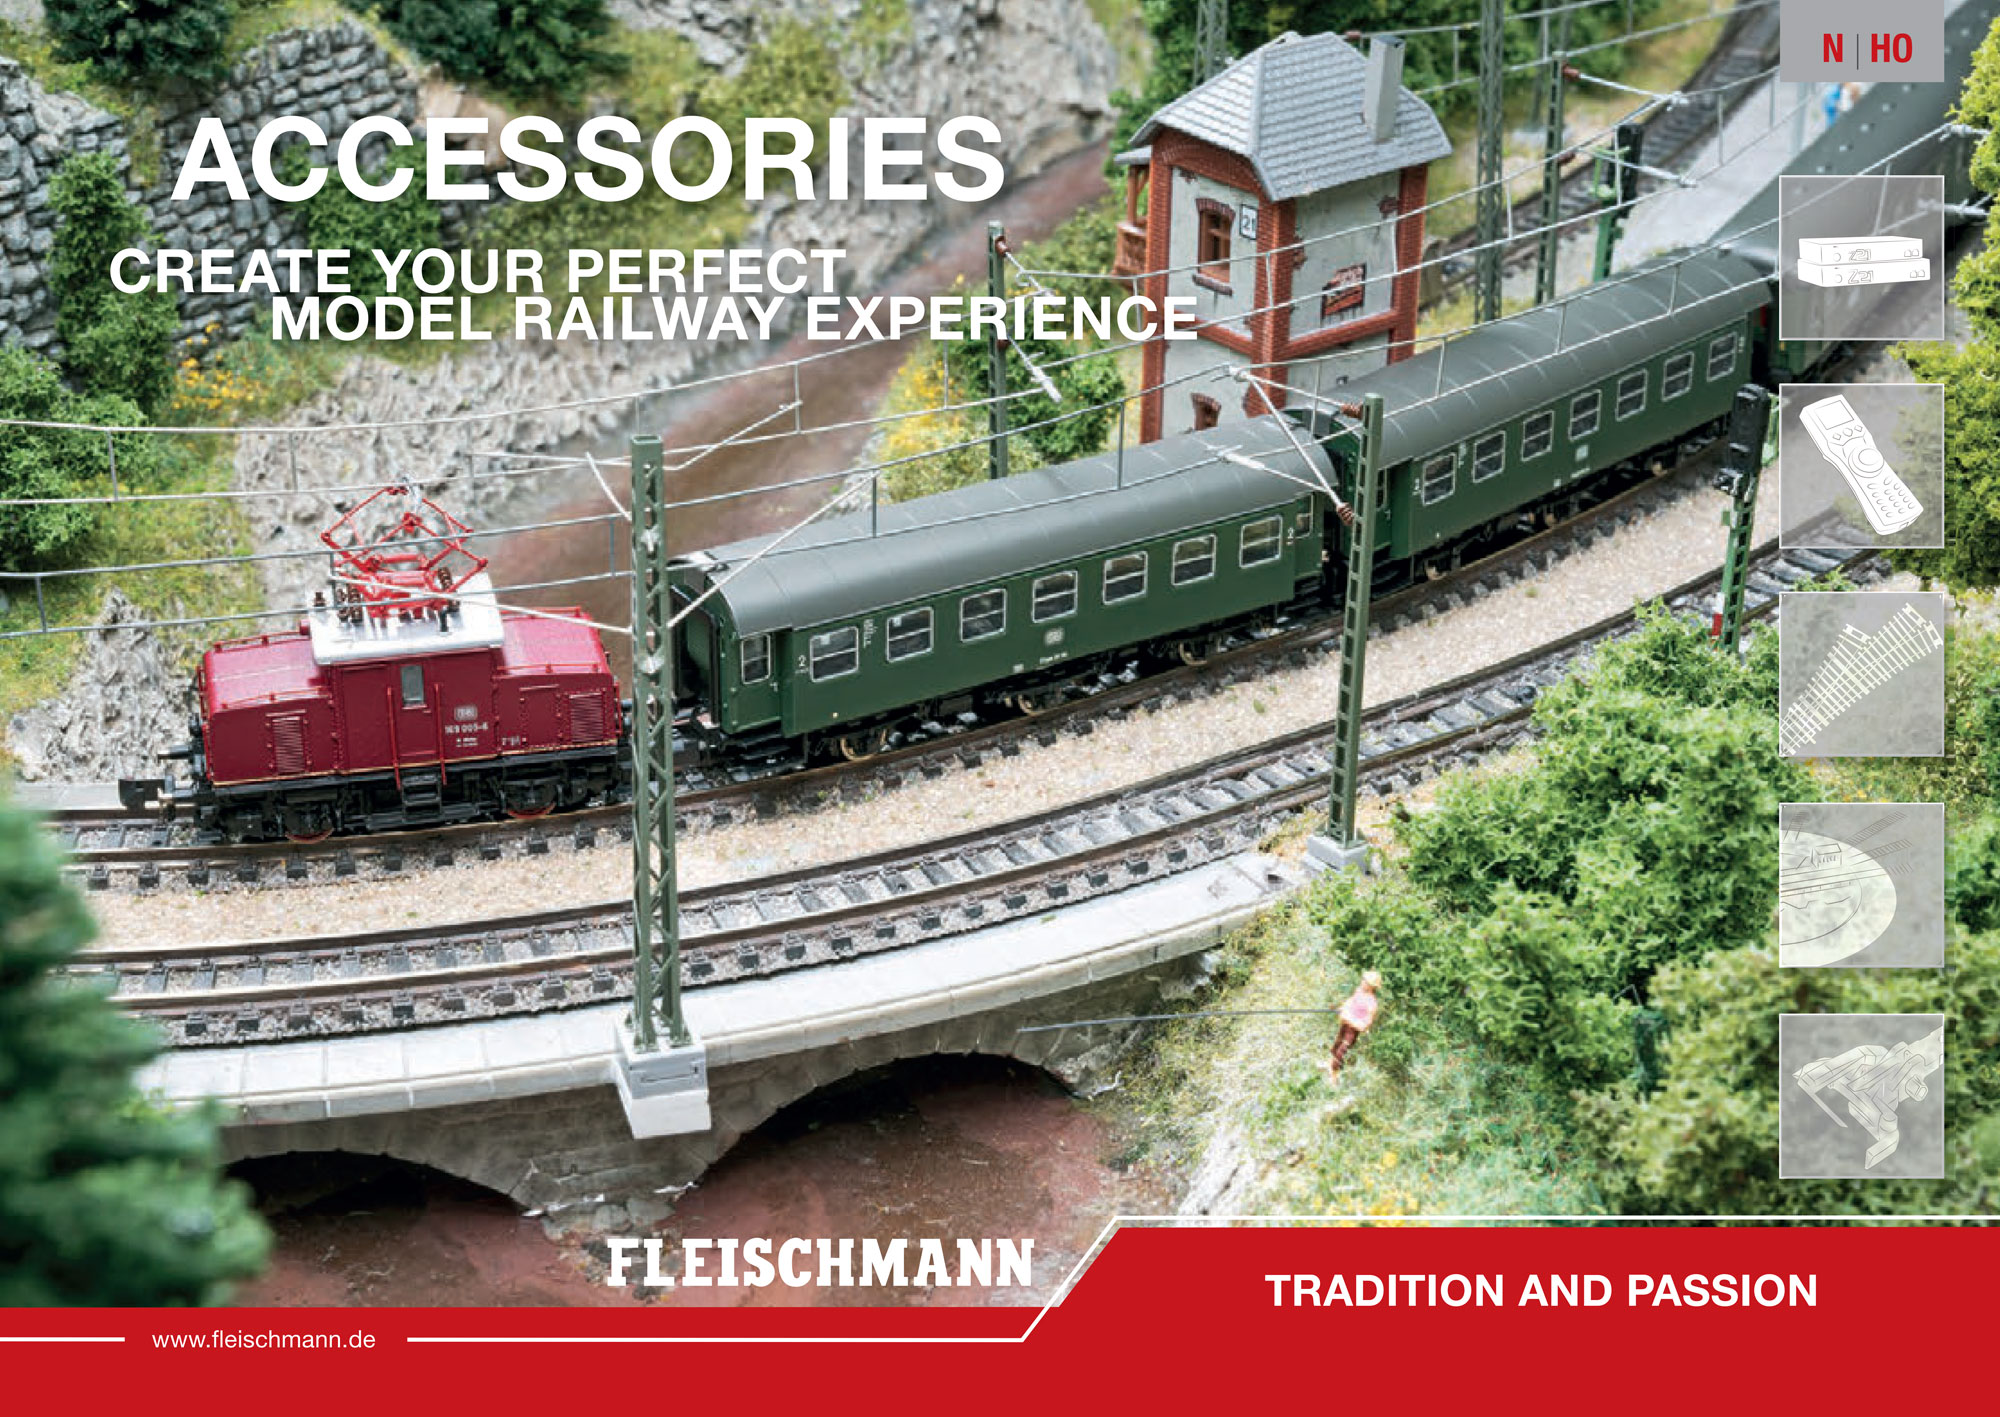 Fleischmann - Accessories 2020 catalog